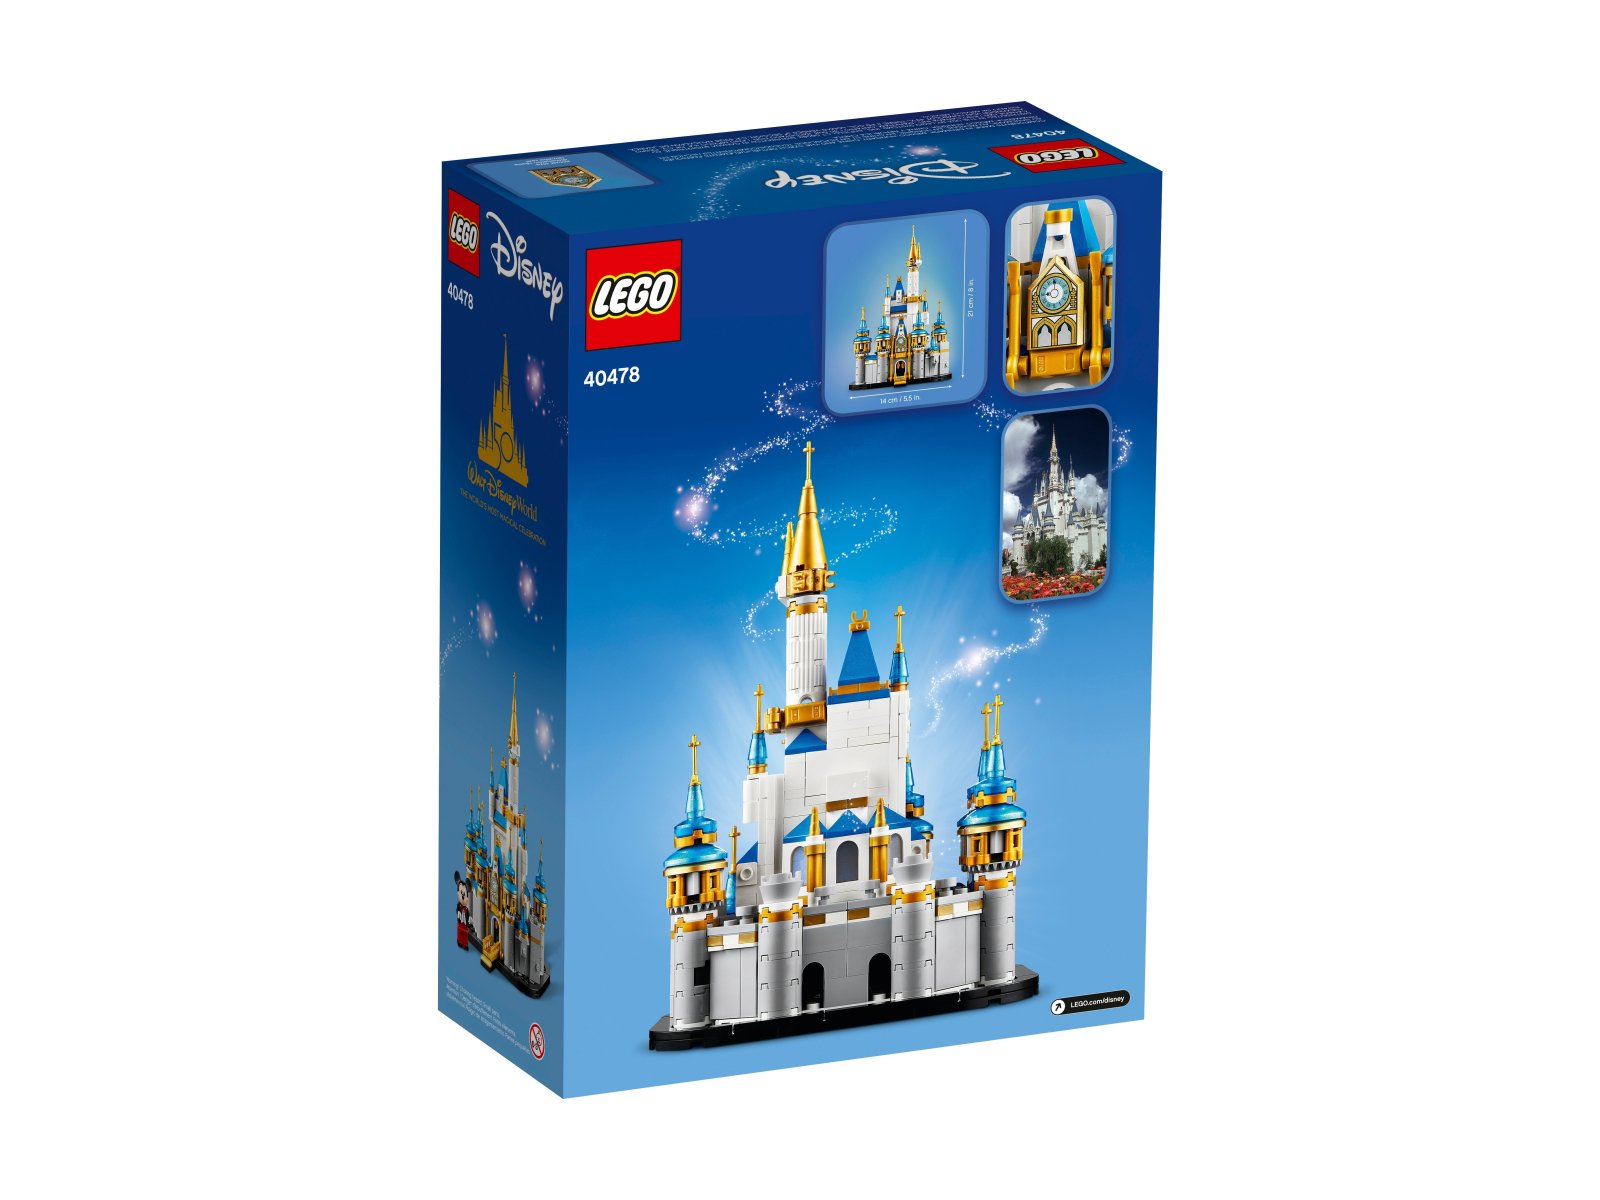 LEGO 40478 Miniaturowy zamek Disneya